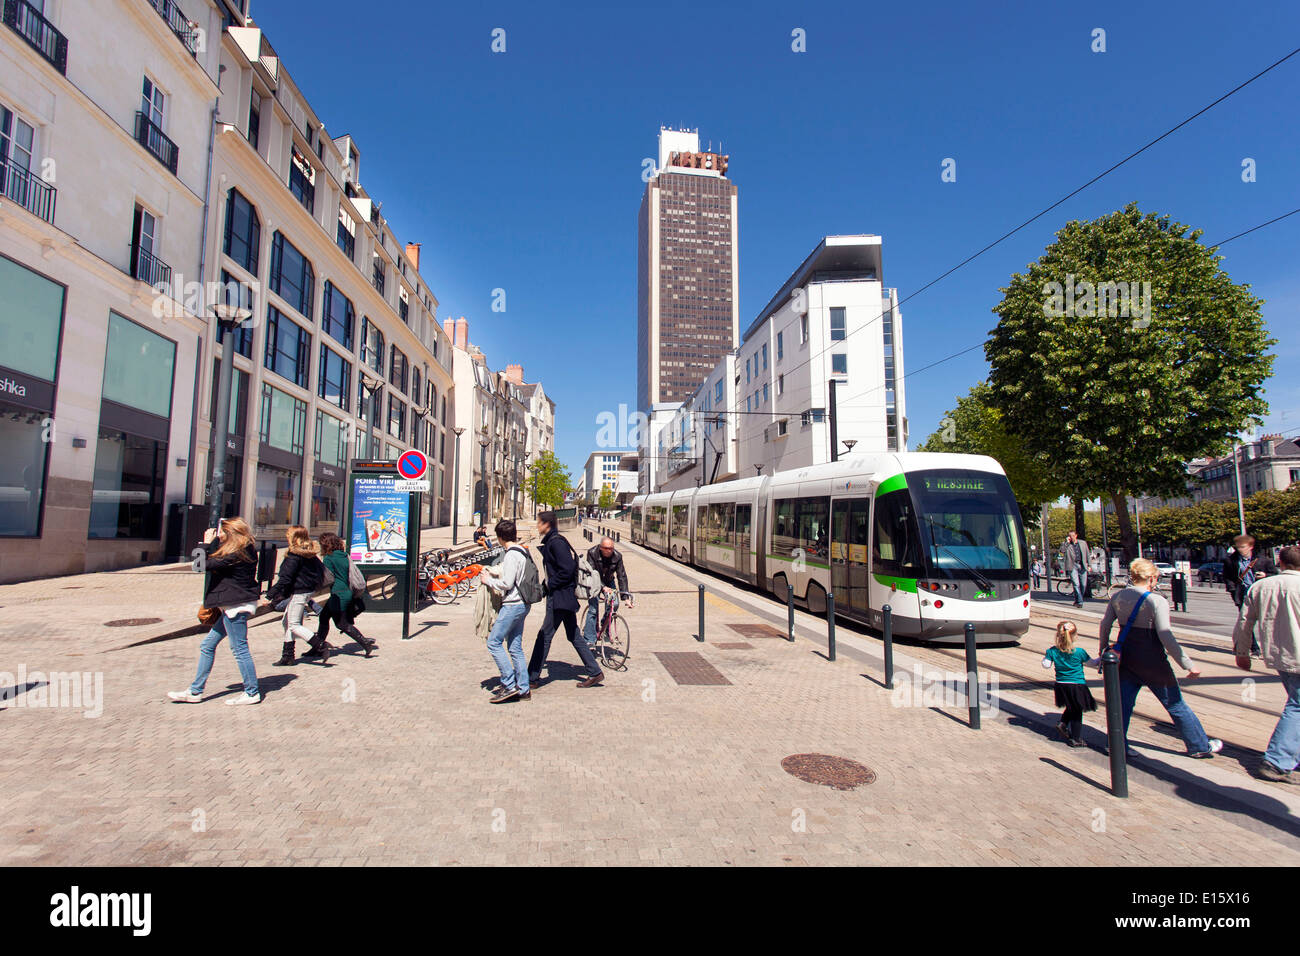 Nantes (Pays de la Loire region): the district of 'Ilot boucherie' Stock Photo